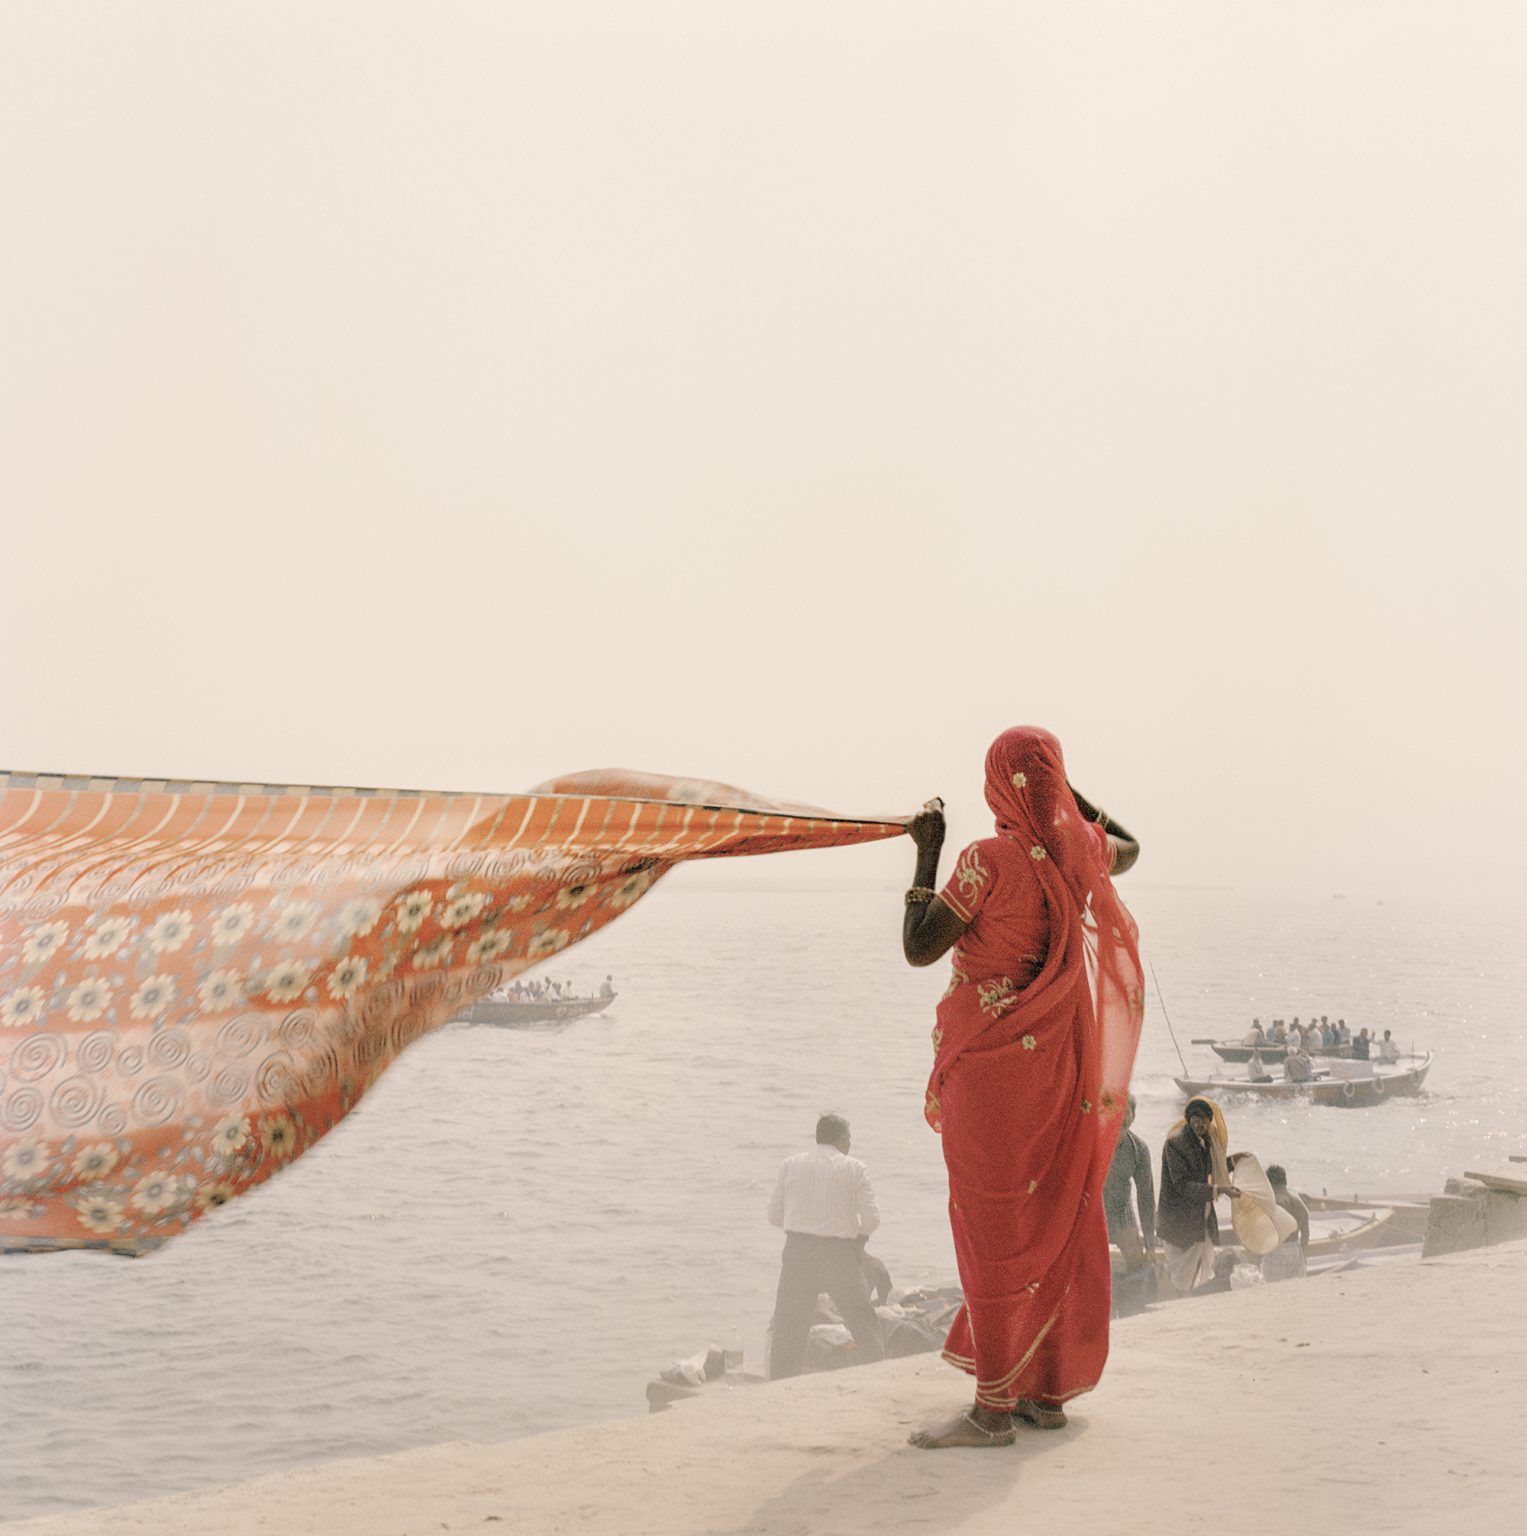 Hindu devotee preparing to perform the sacred ablutions in the waters of Varanasi.